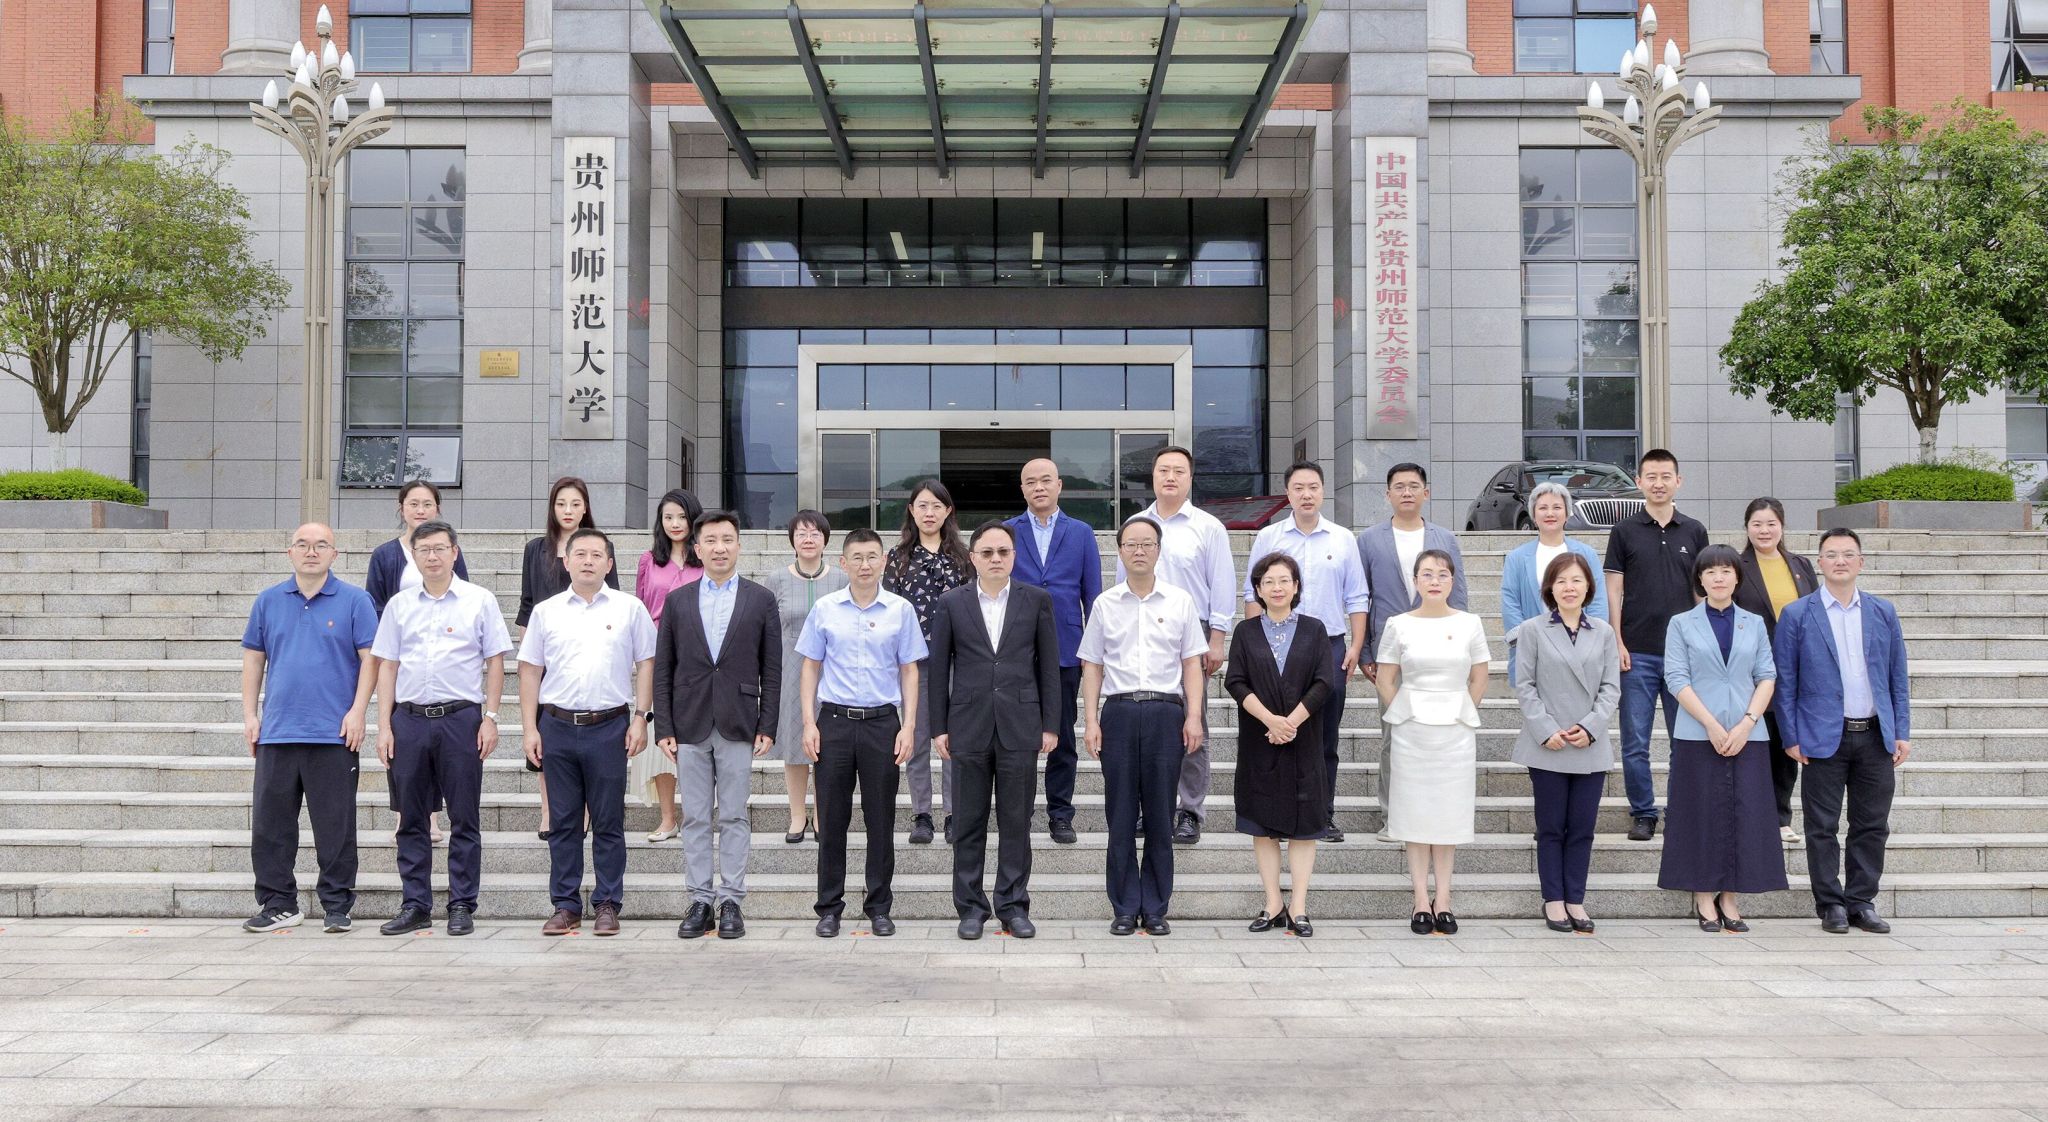 贵州省外事办公室与贵州师范大学签订合作备忘录